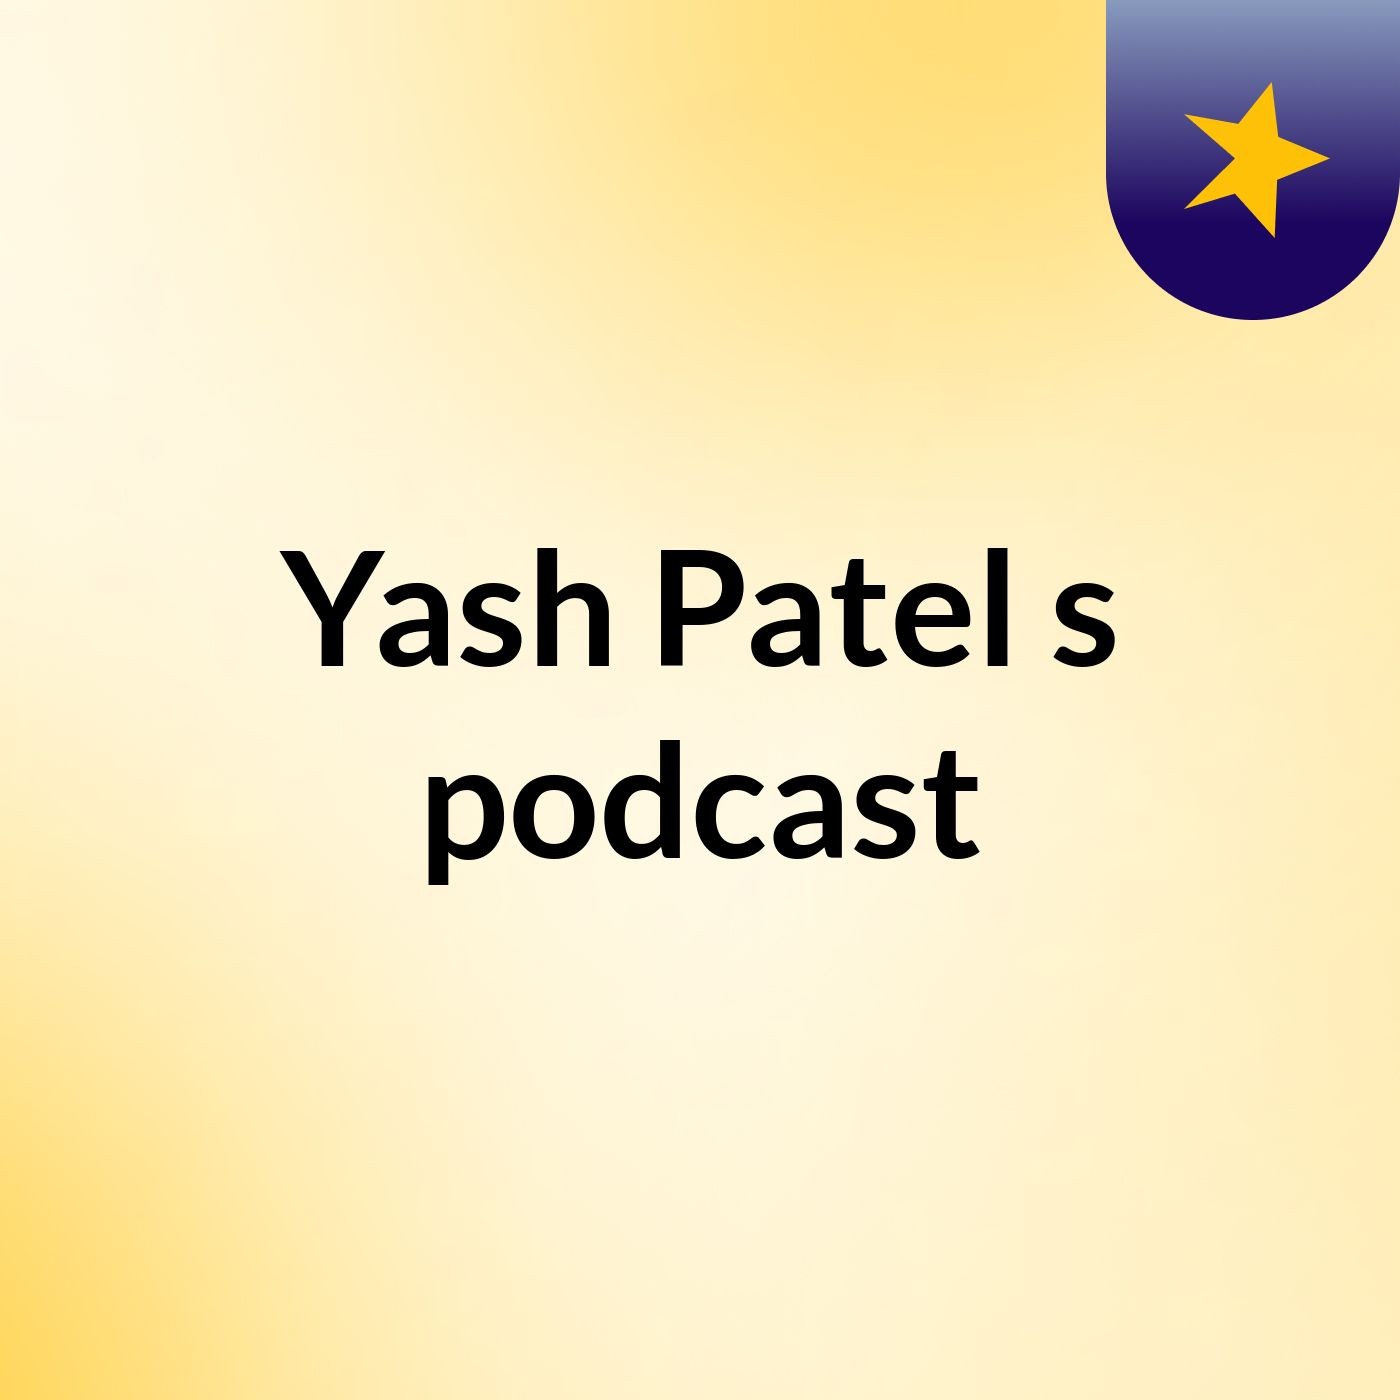 Episode 2 - Yash Patel's podcast